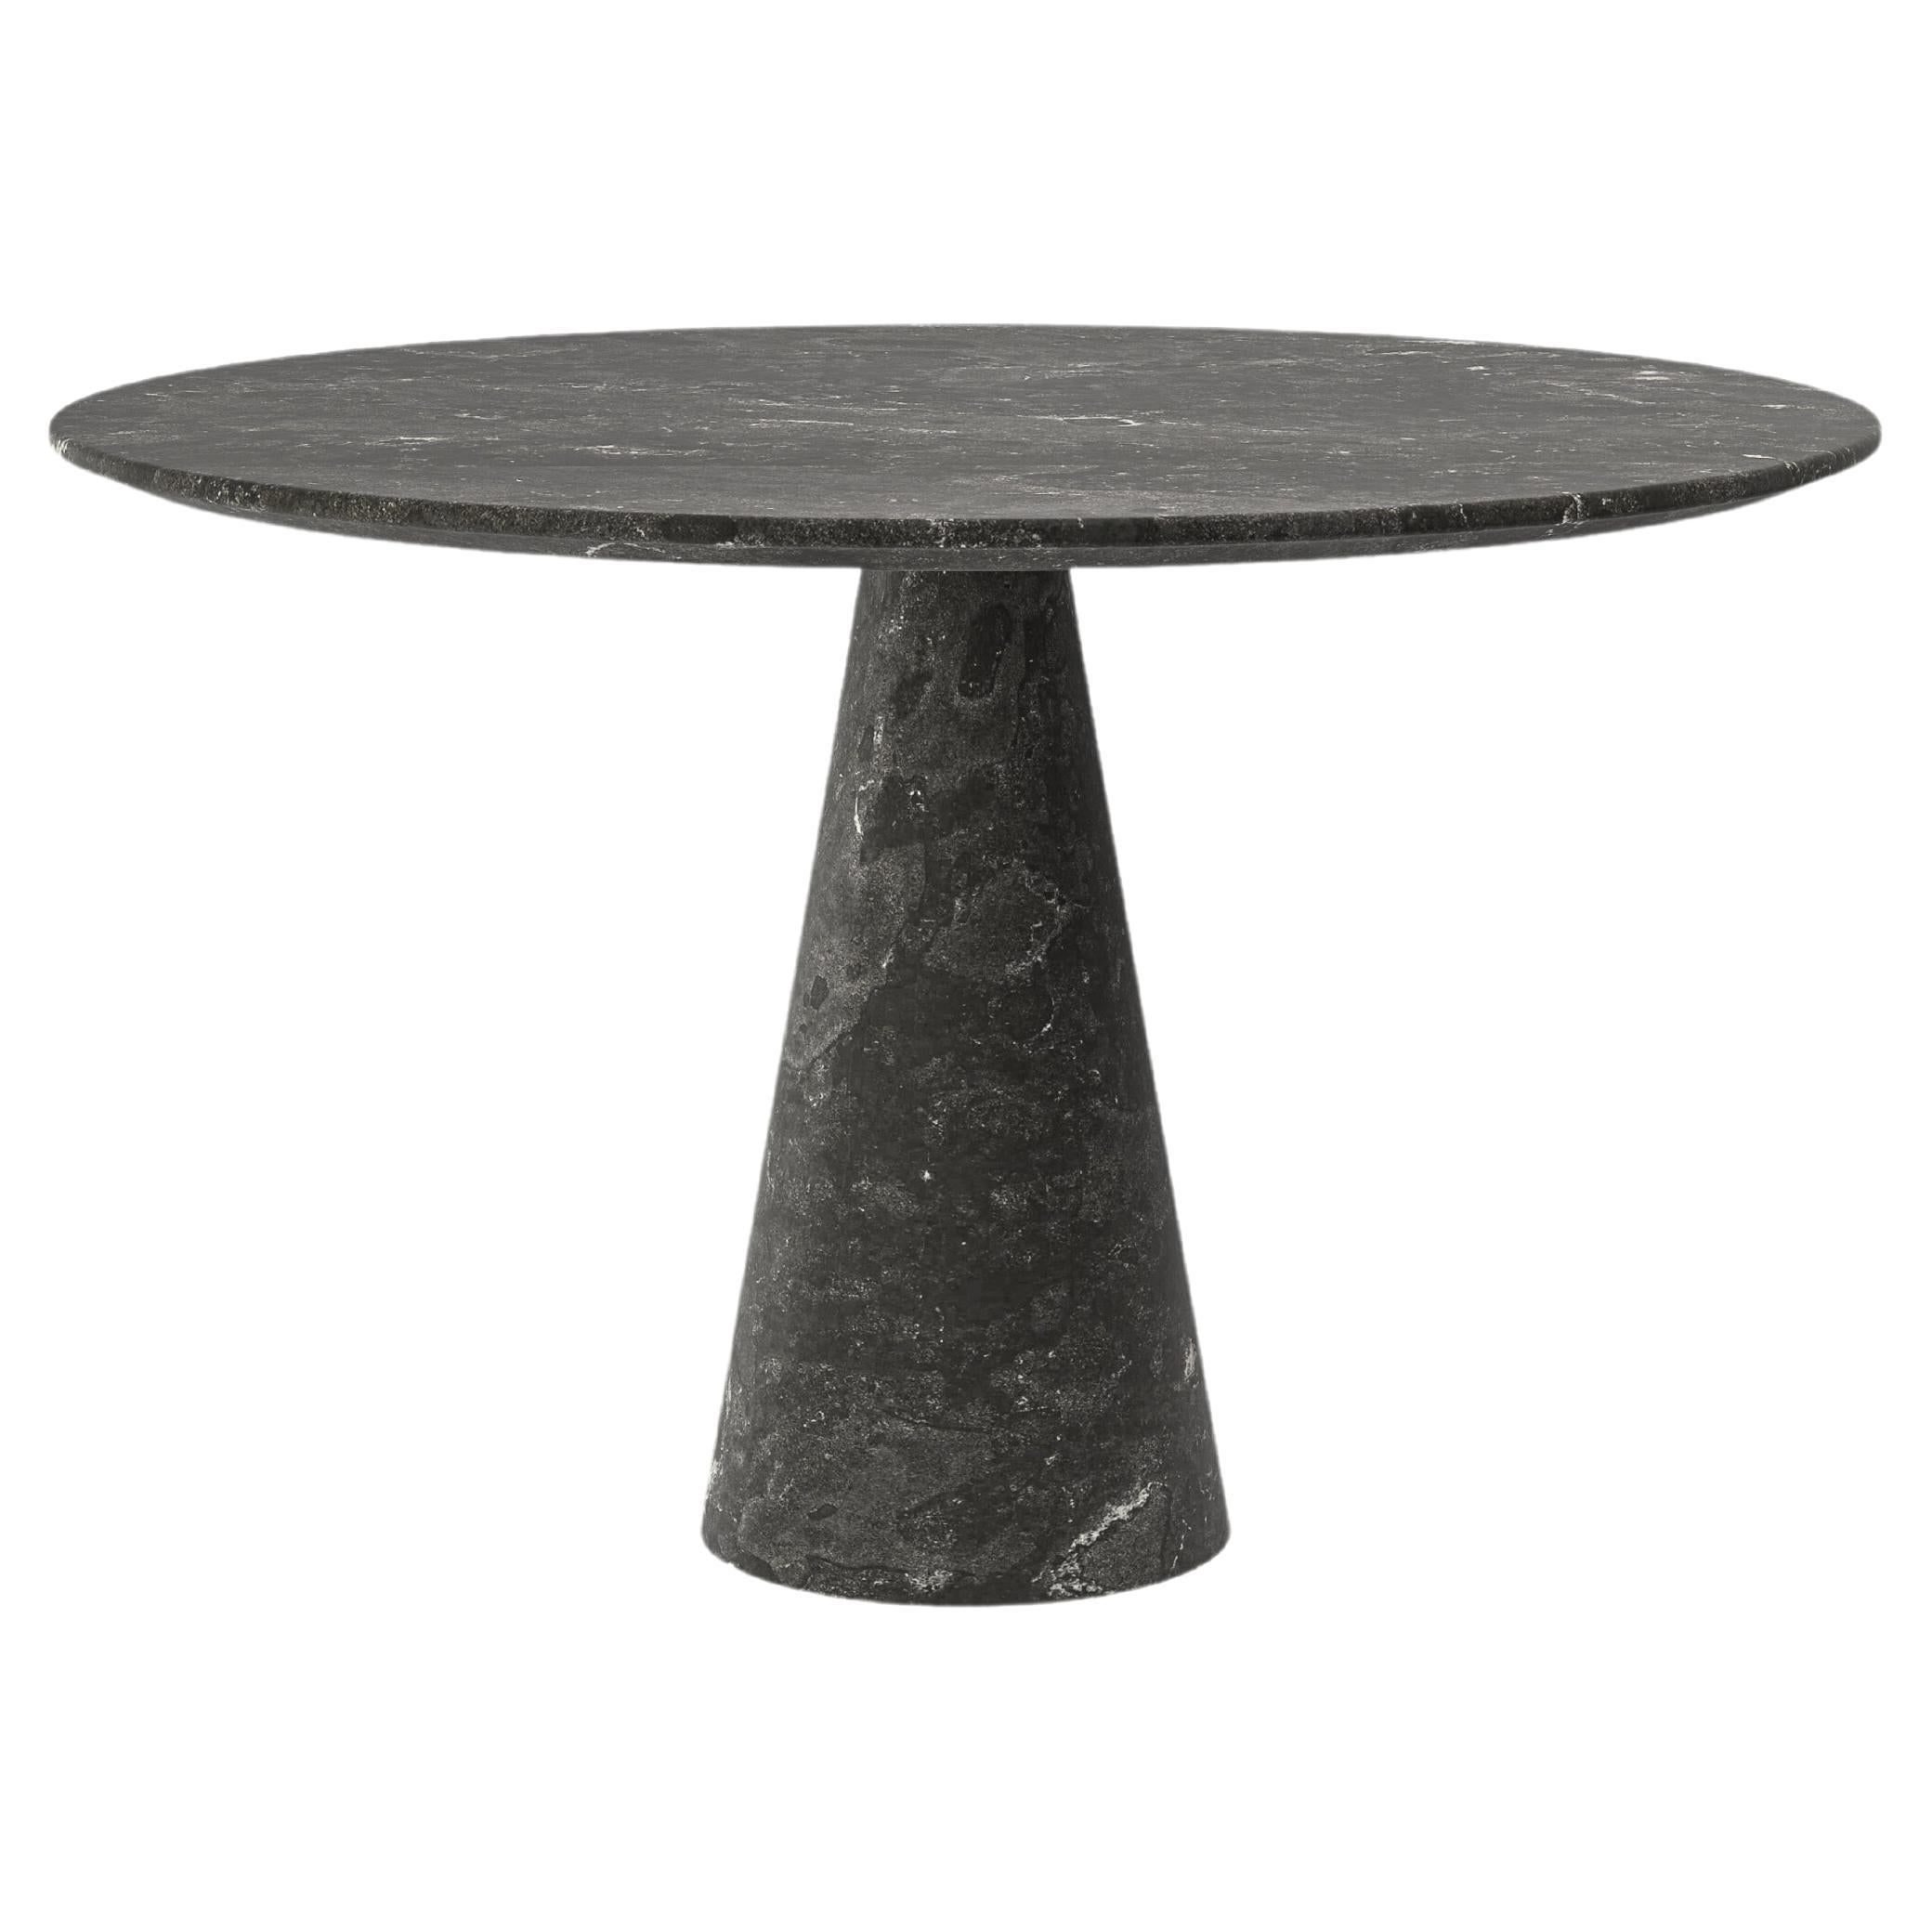 FORM(LA) Cono Round Dining Table 36”L x 36”W x 30”H Nero Petite Granite For Sale